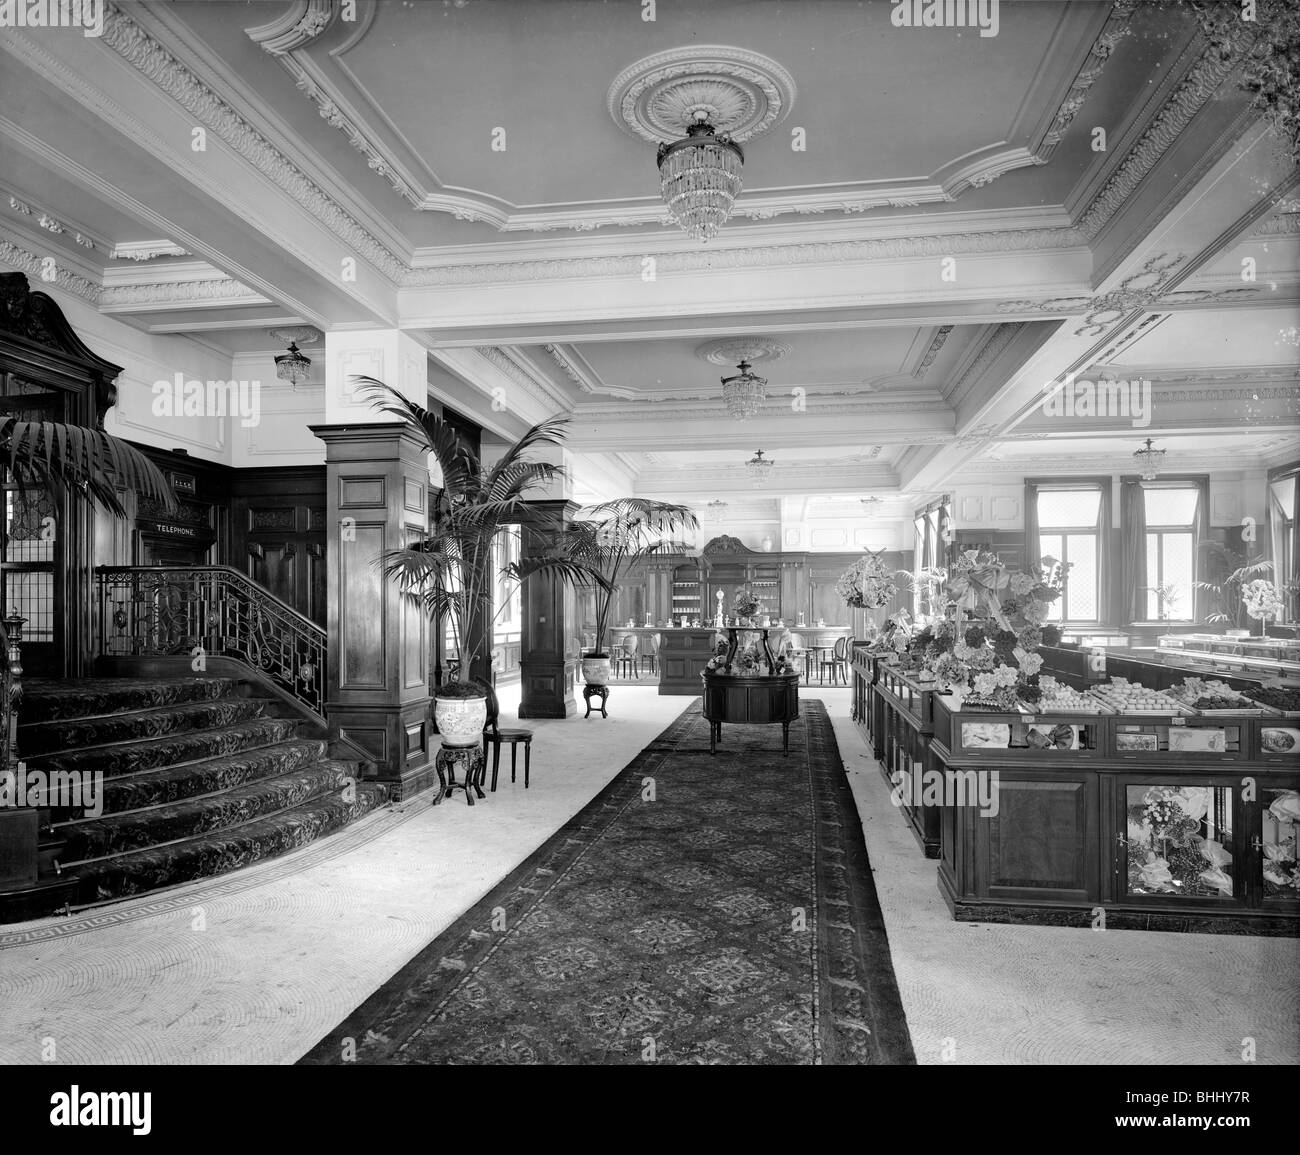 L'intérieur de maison Lyons, Oxford Street, Westminster, London, 1916. Artiste : Bedford Lemere et compagnie Banque D'Images